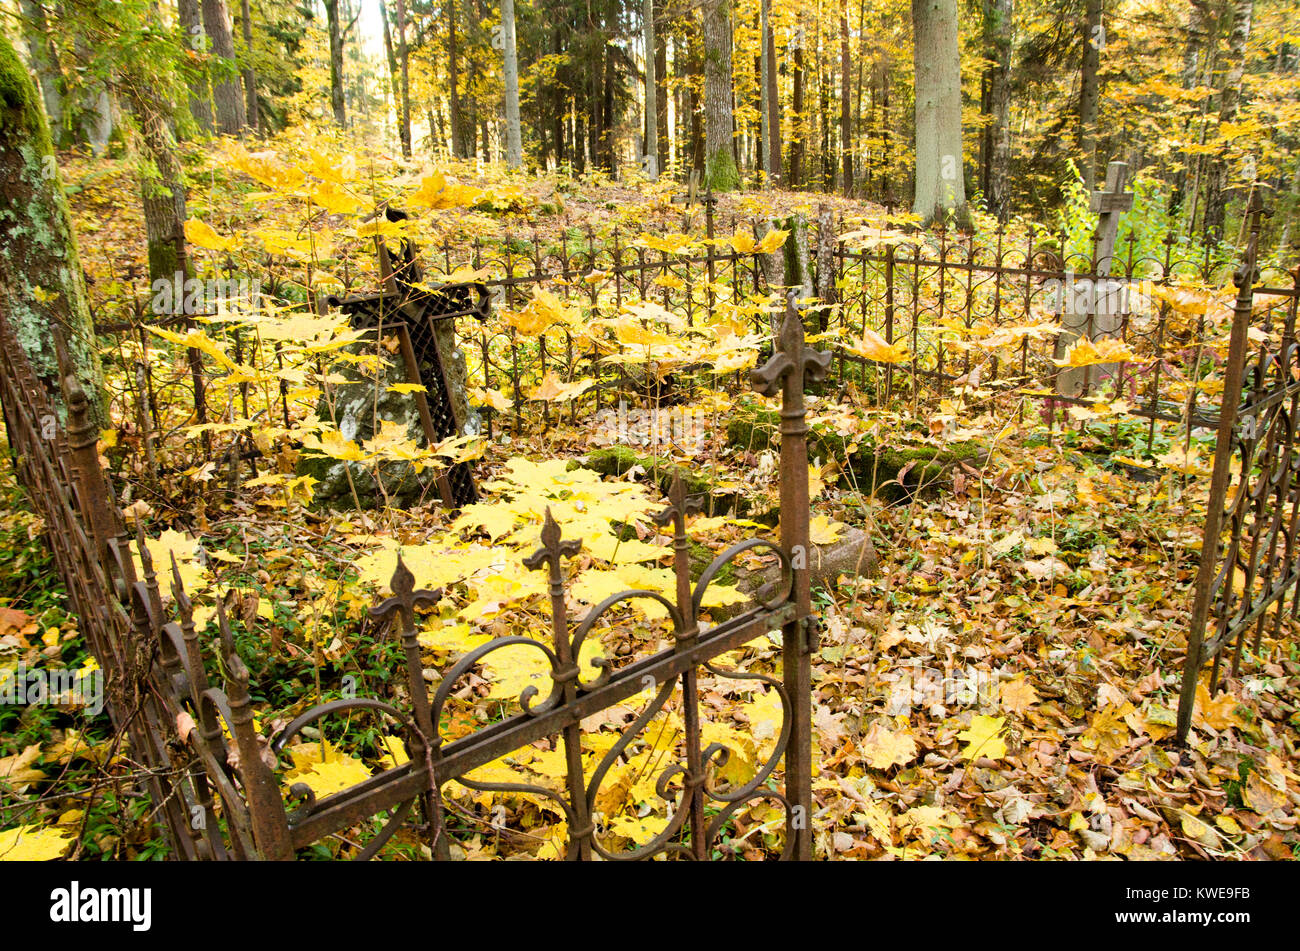 Un tir d'un vieux cimetière cimetière dans les bois avec croix de métal rouillé tordu et clôture autour avec des feuilles jaunes sur les arbres. Banque D'Images